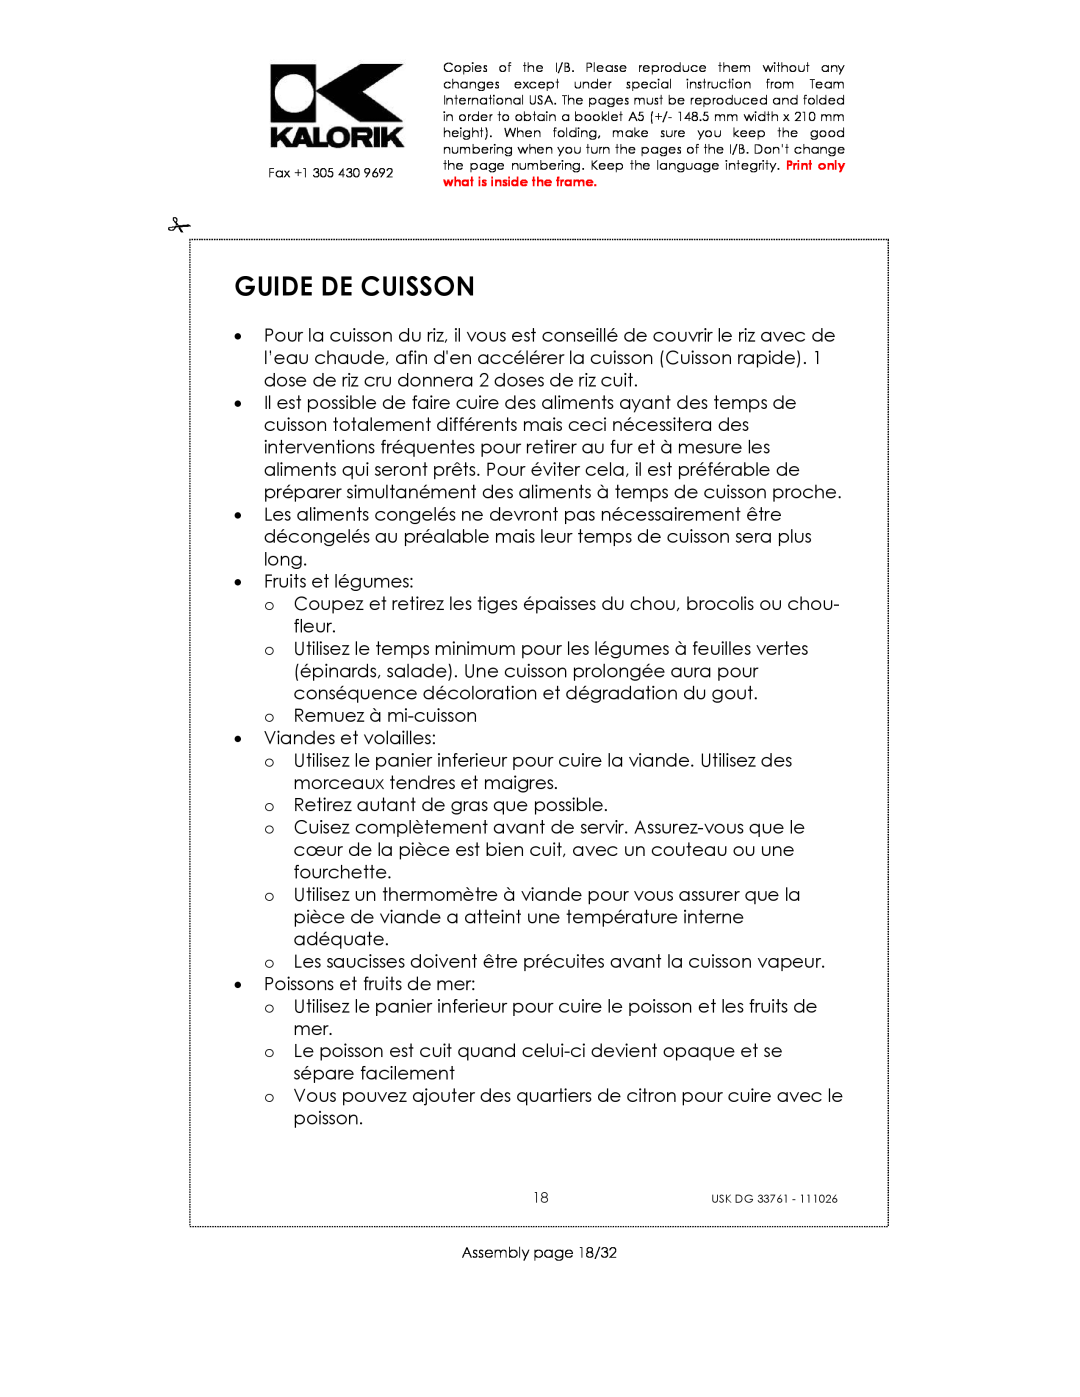 Kalorik USK DG 33761 manual Guide De Cuisson 